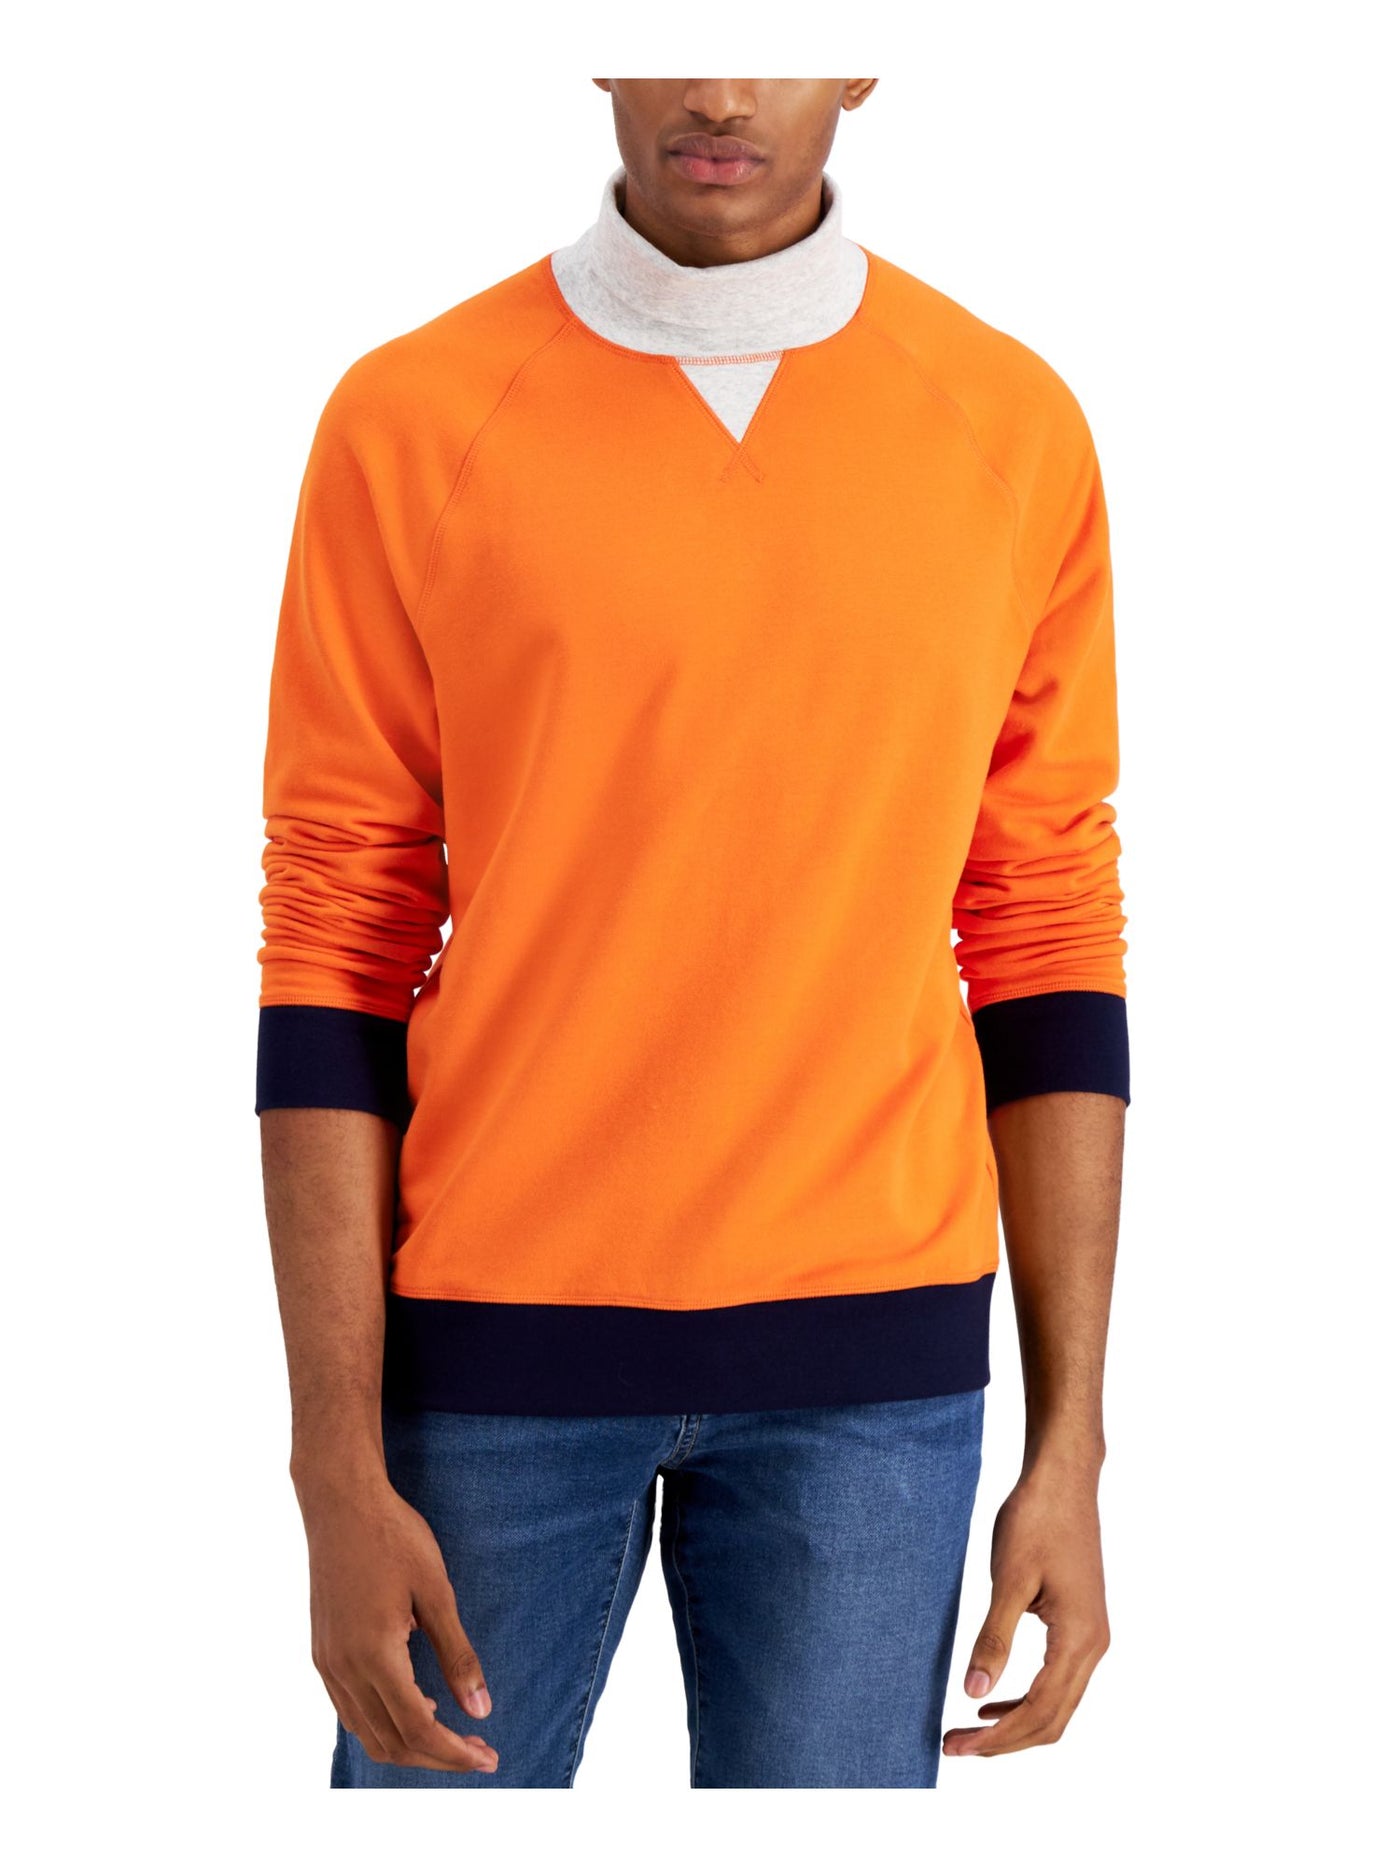 CLUBROOM Mens Orange Turtle Neck Classic Fit Fleece Sweatshirt S